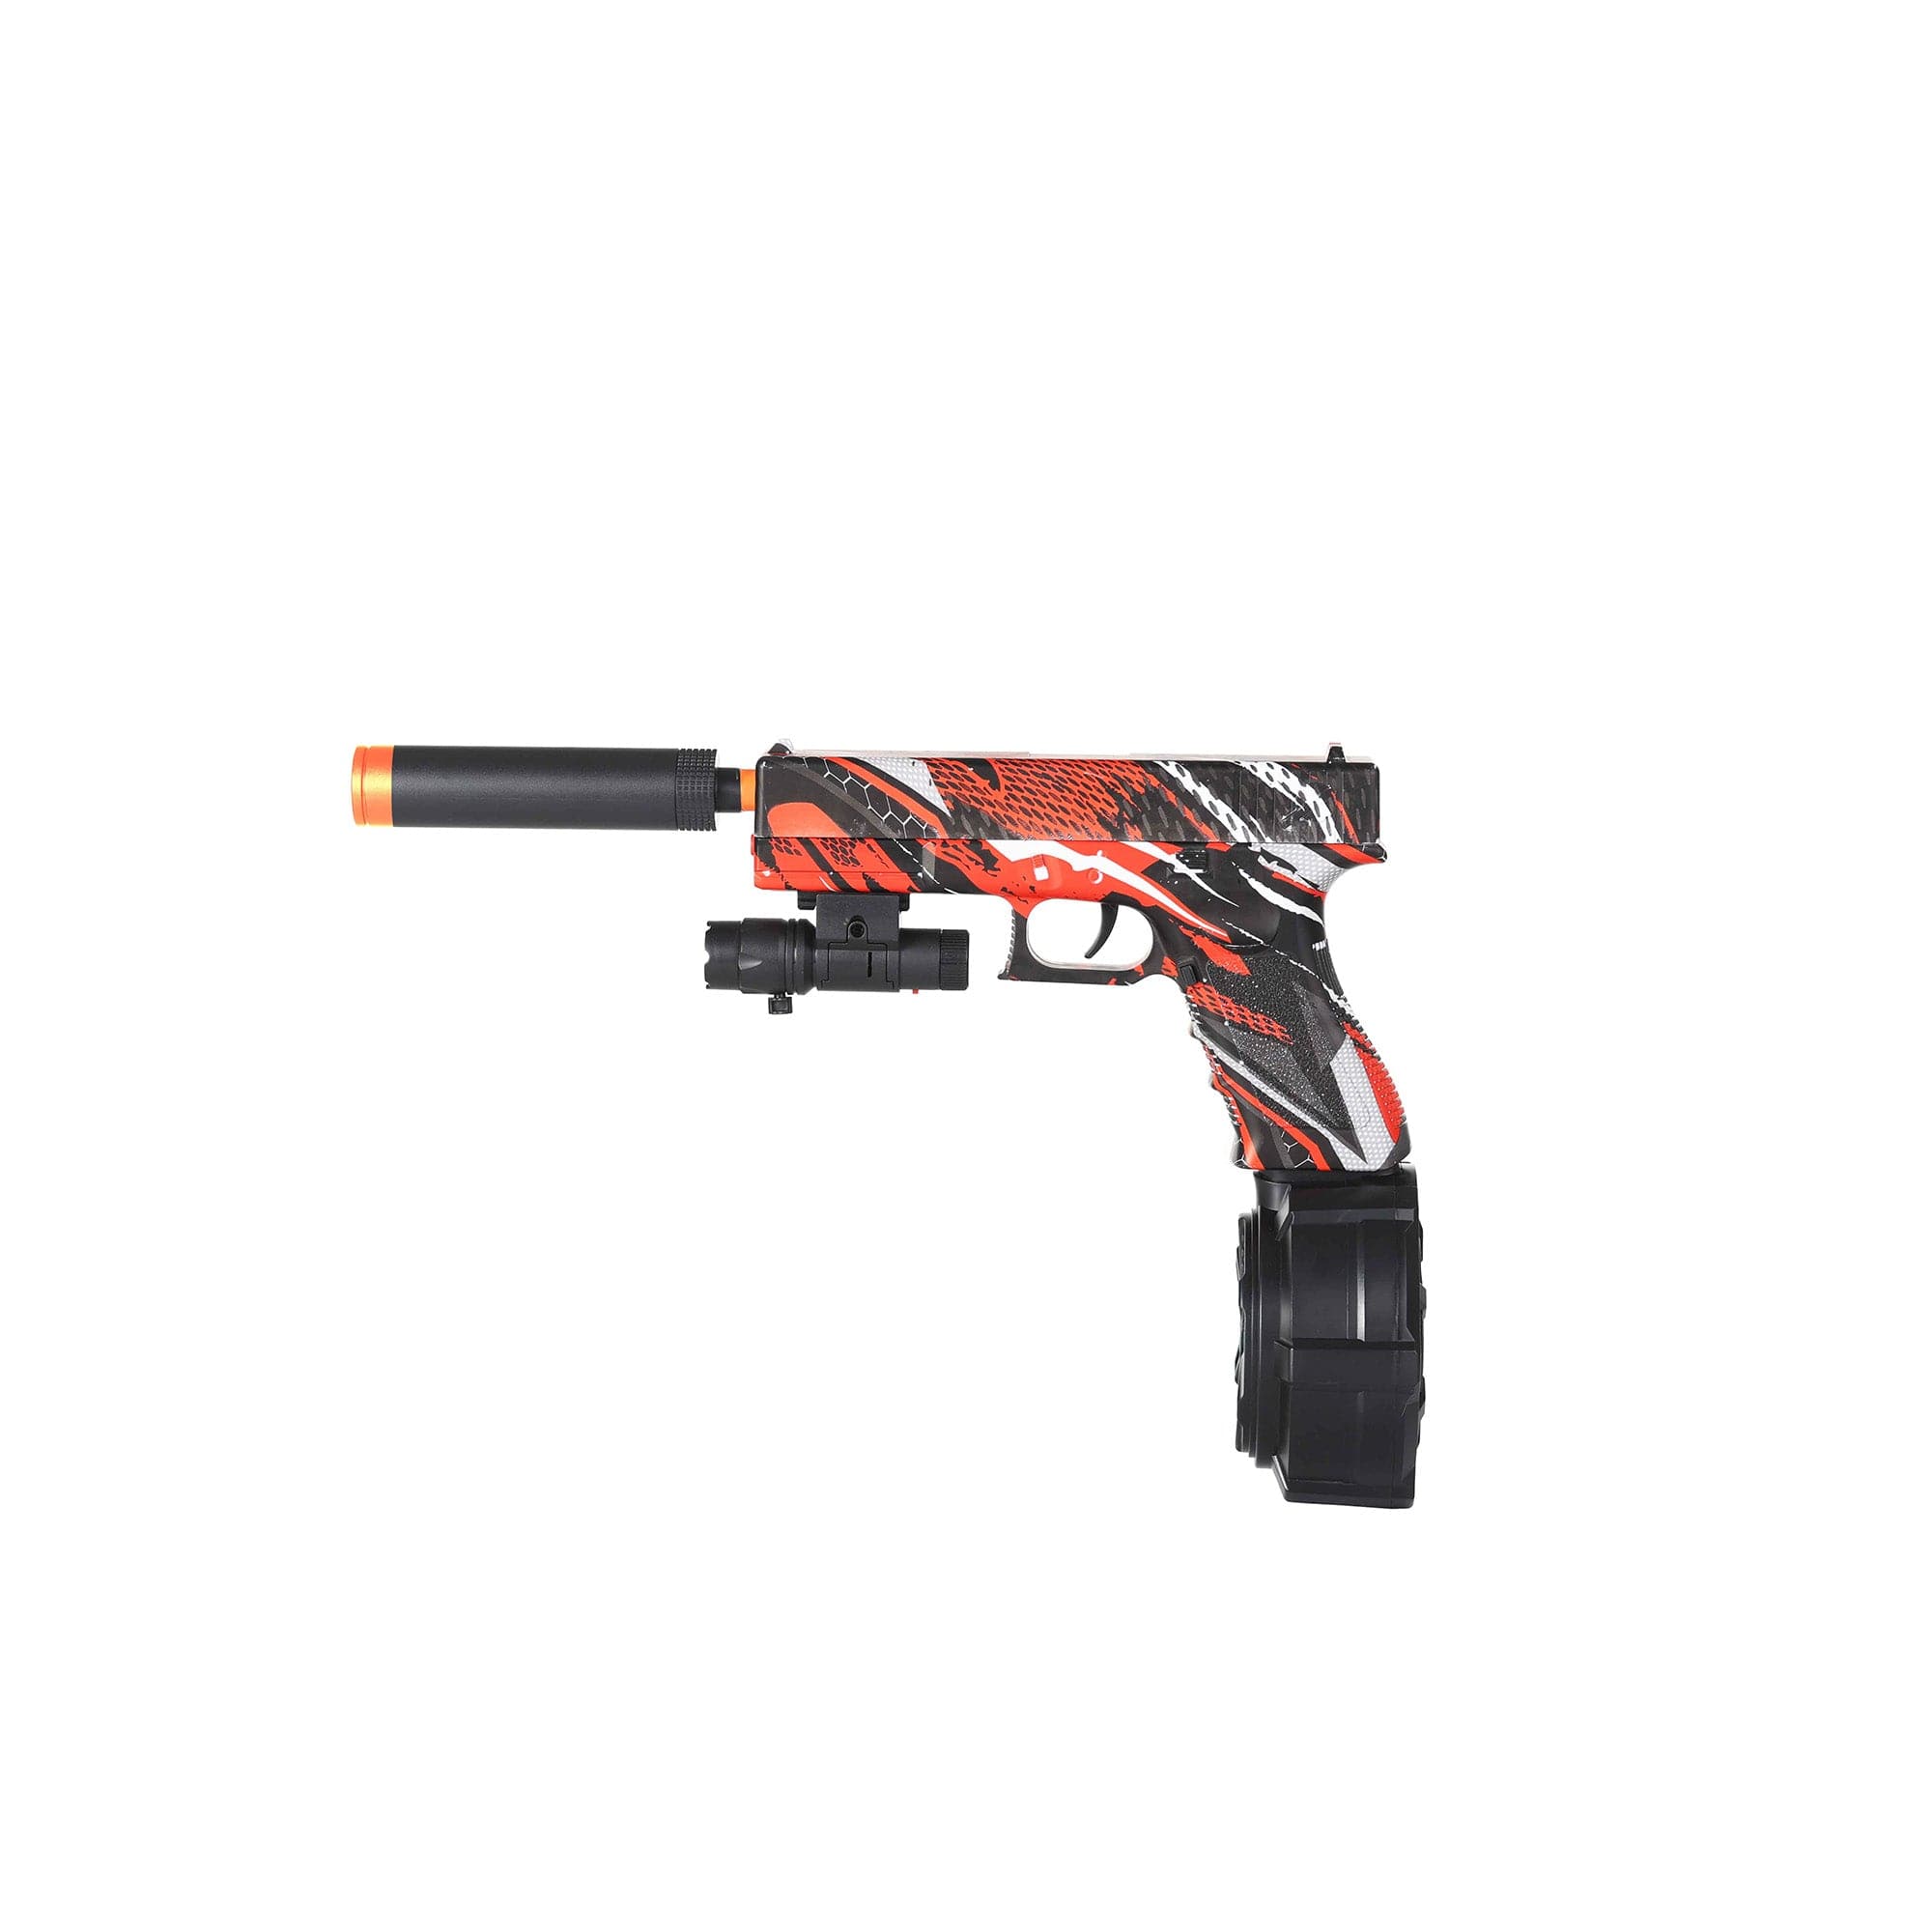 Gleetoy Pistola Glock Eléctrica Pistola Blaster de Gel (Roja)